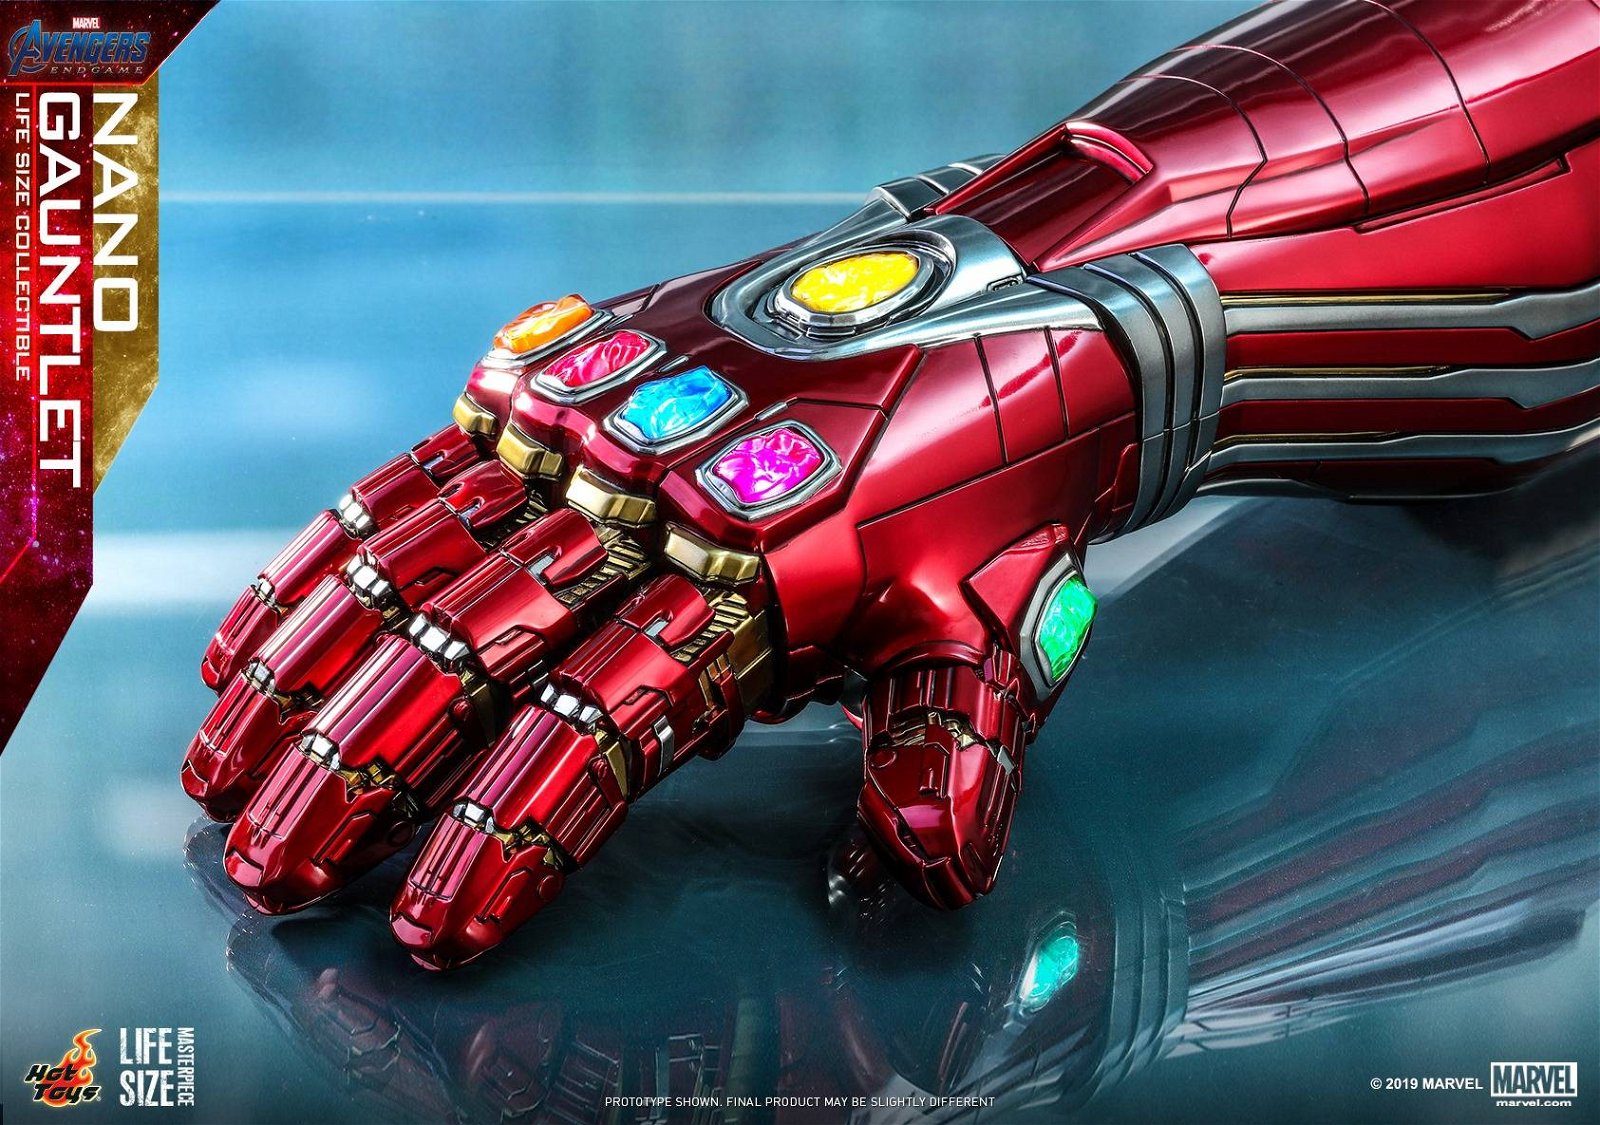 Immagine di Hot Toys e la replica 1:1 del Nano Gauntlet di Avengers: Endgame